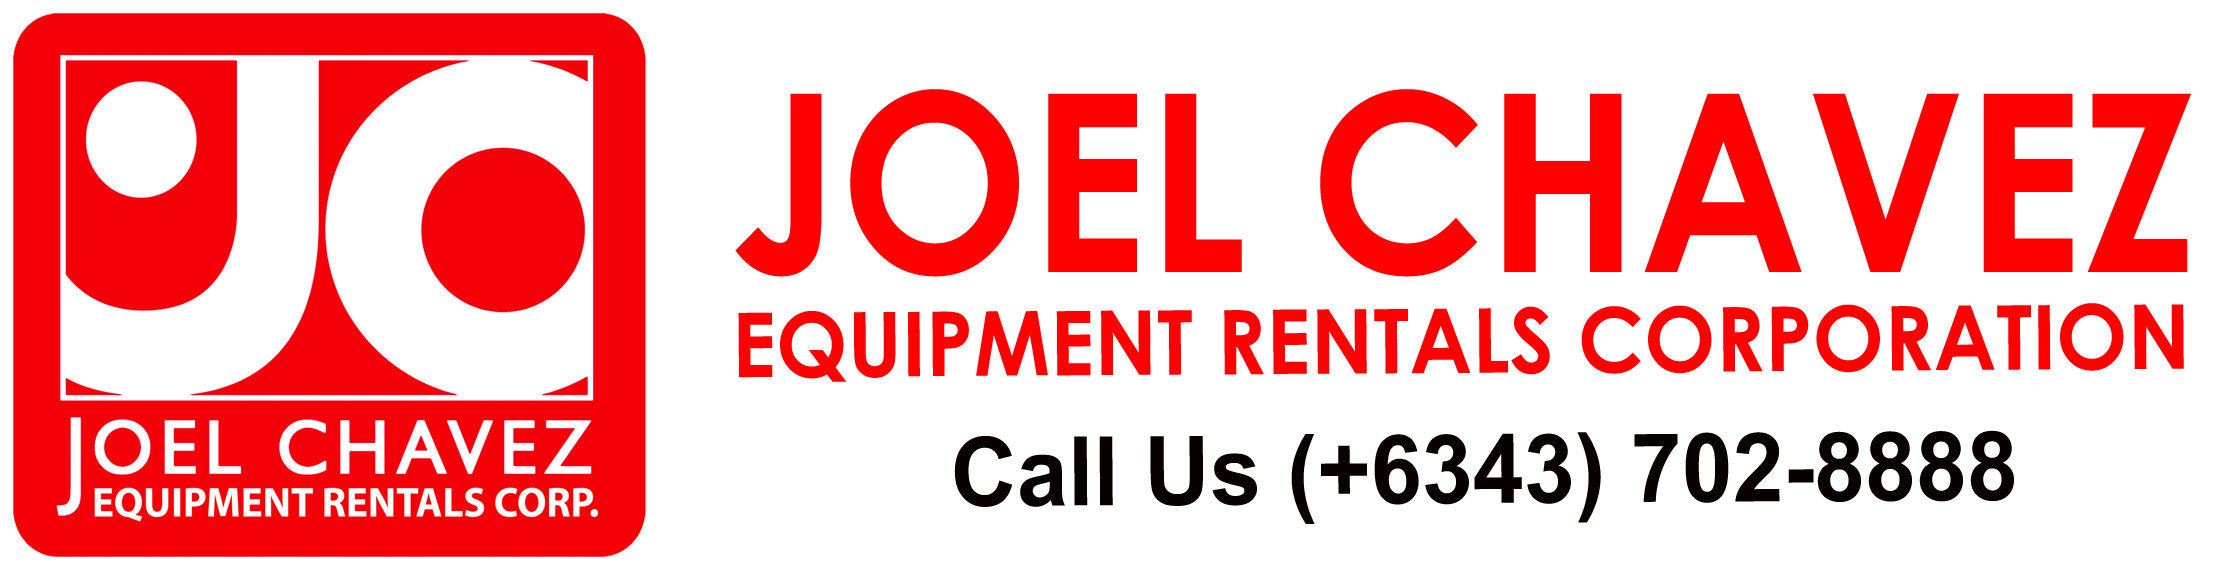 Joel Chavez Equipment Rentals Corporation